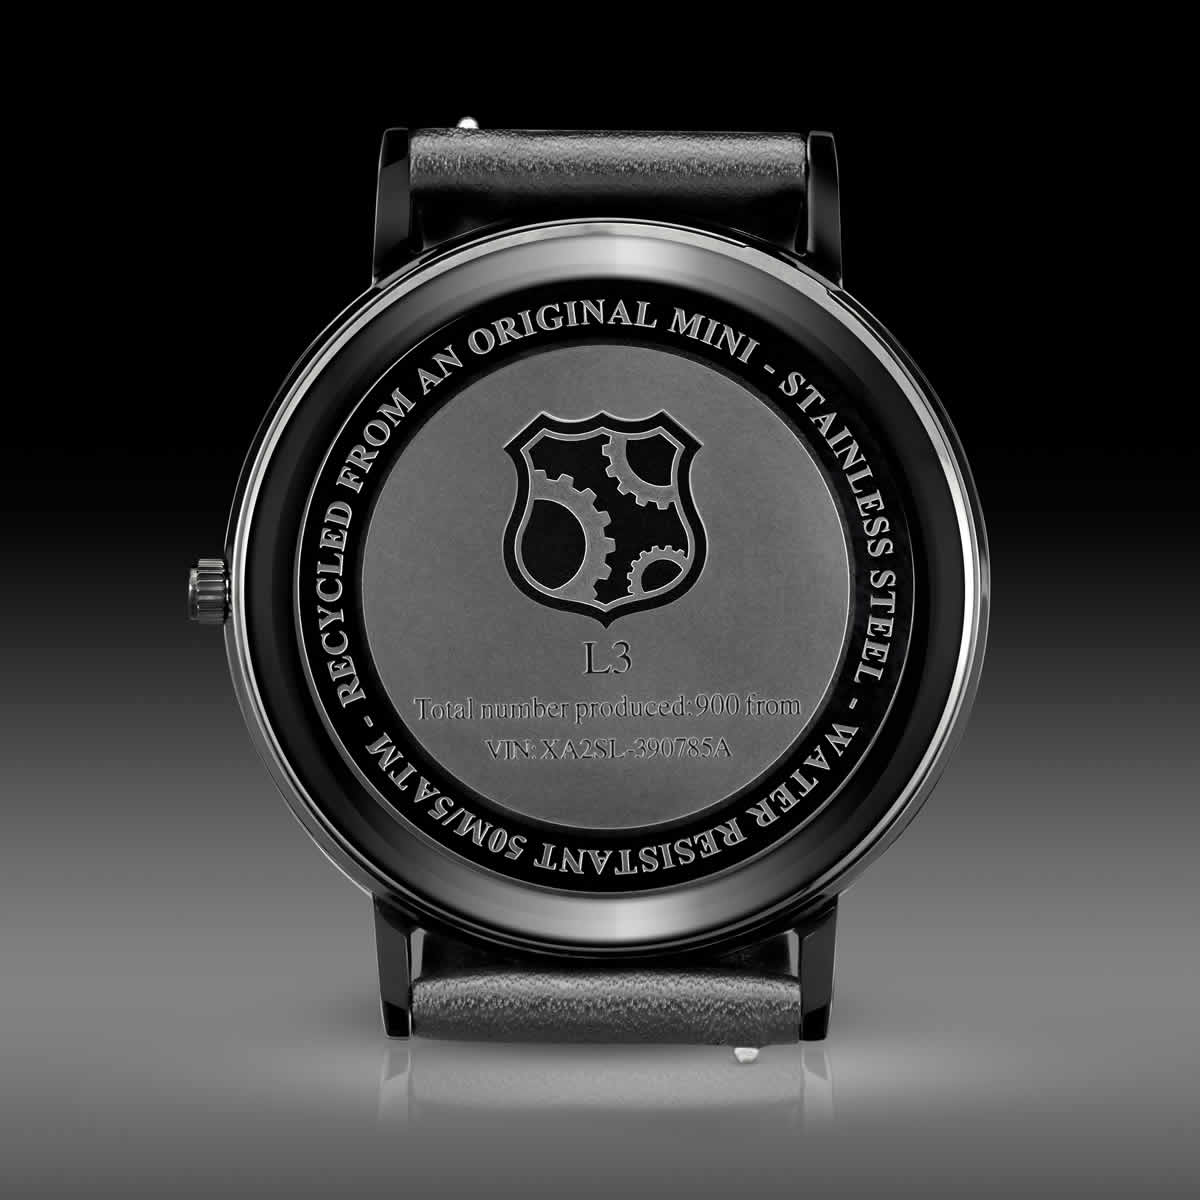 REC Watches The Minimalist L2 ミニマリスト L2 イギリスの自動車ミニの部品を使った時計 